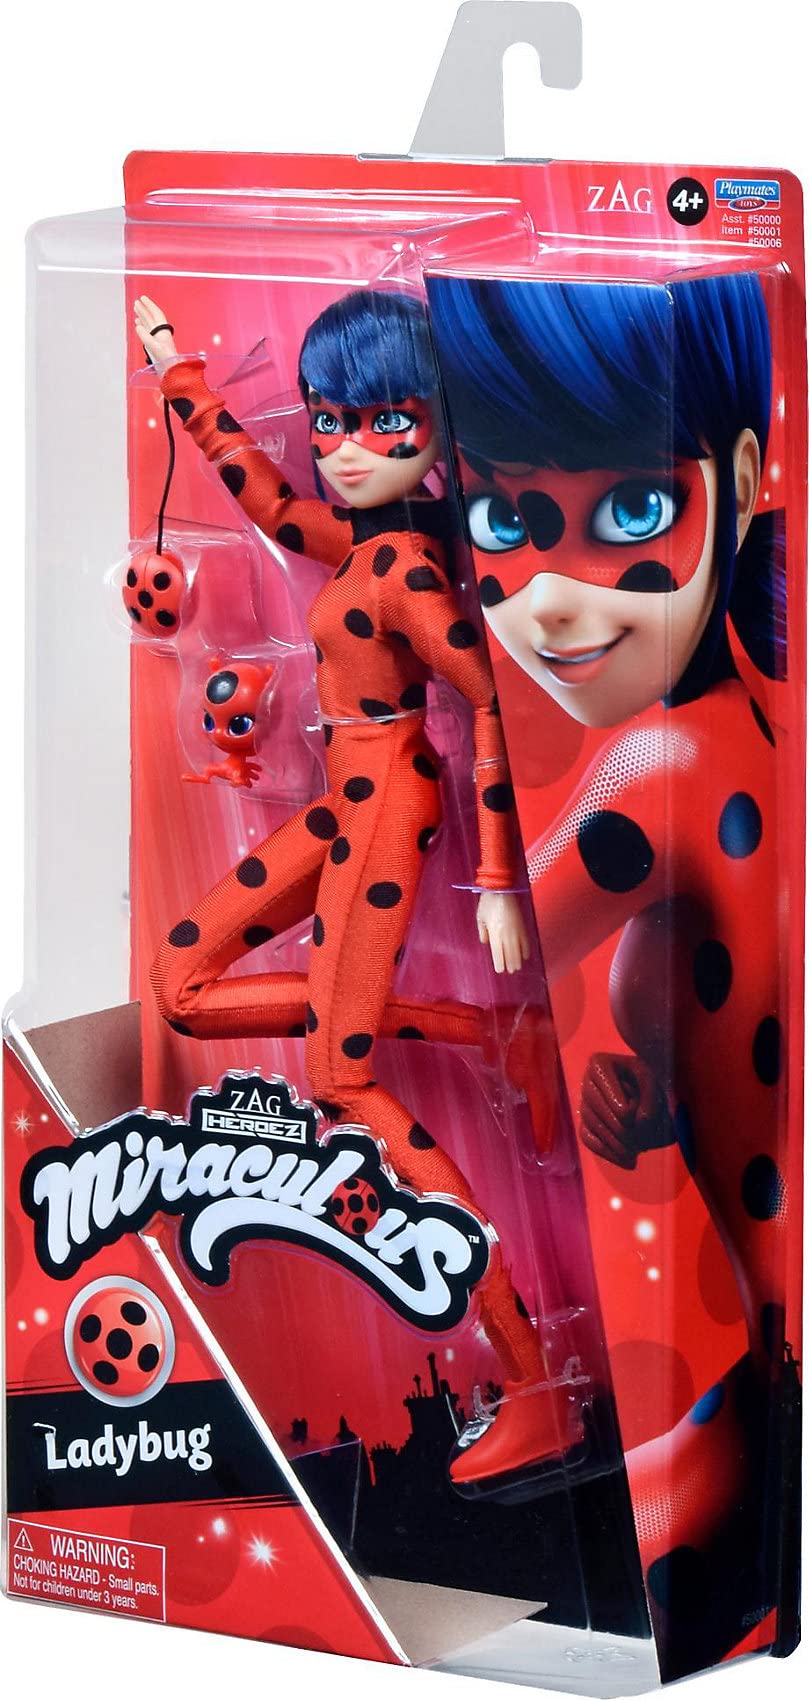 Miraculous Bandai Ladybug Ladybug, Cat, Fashion Doll